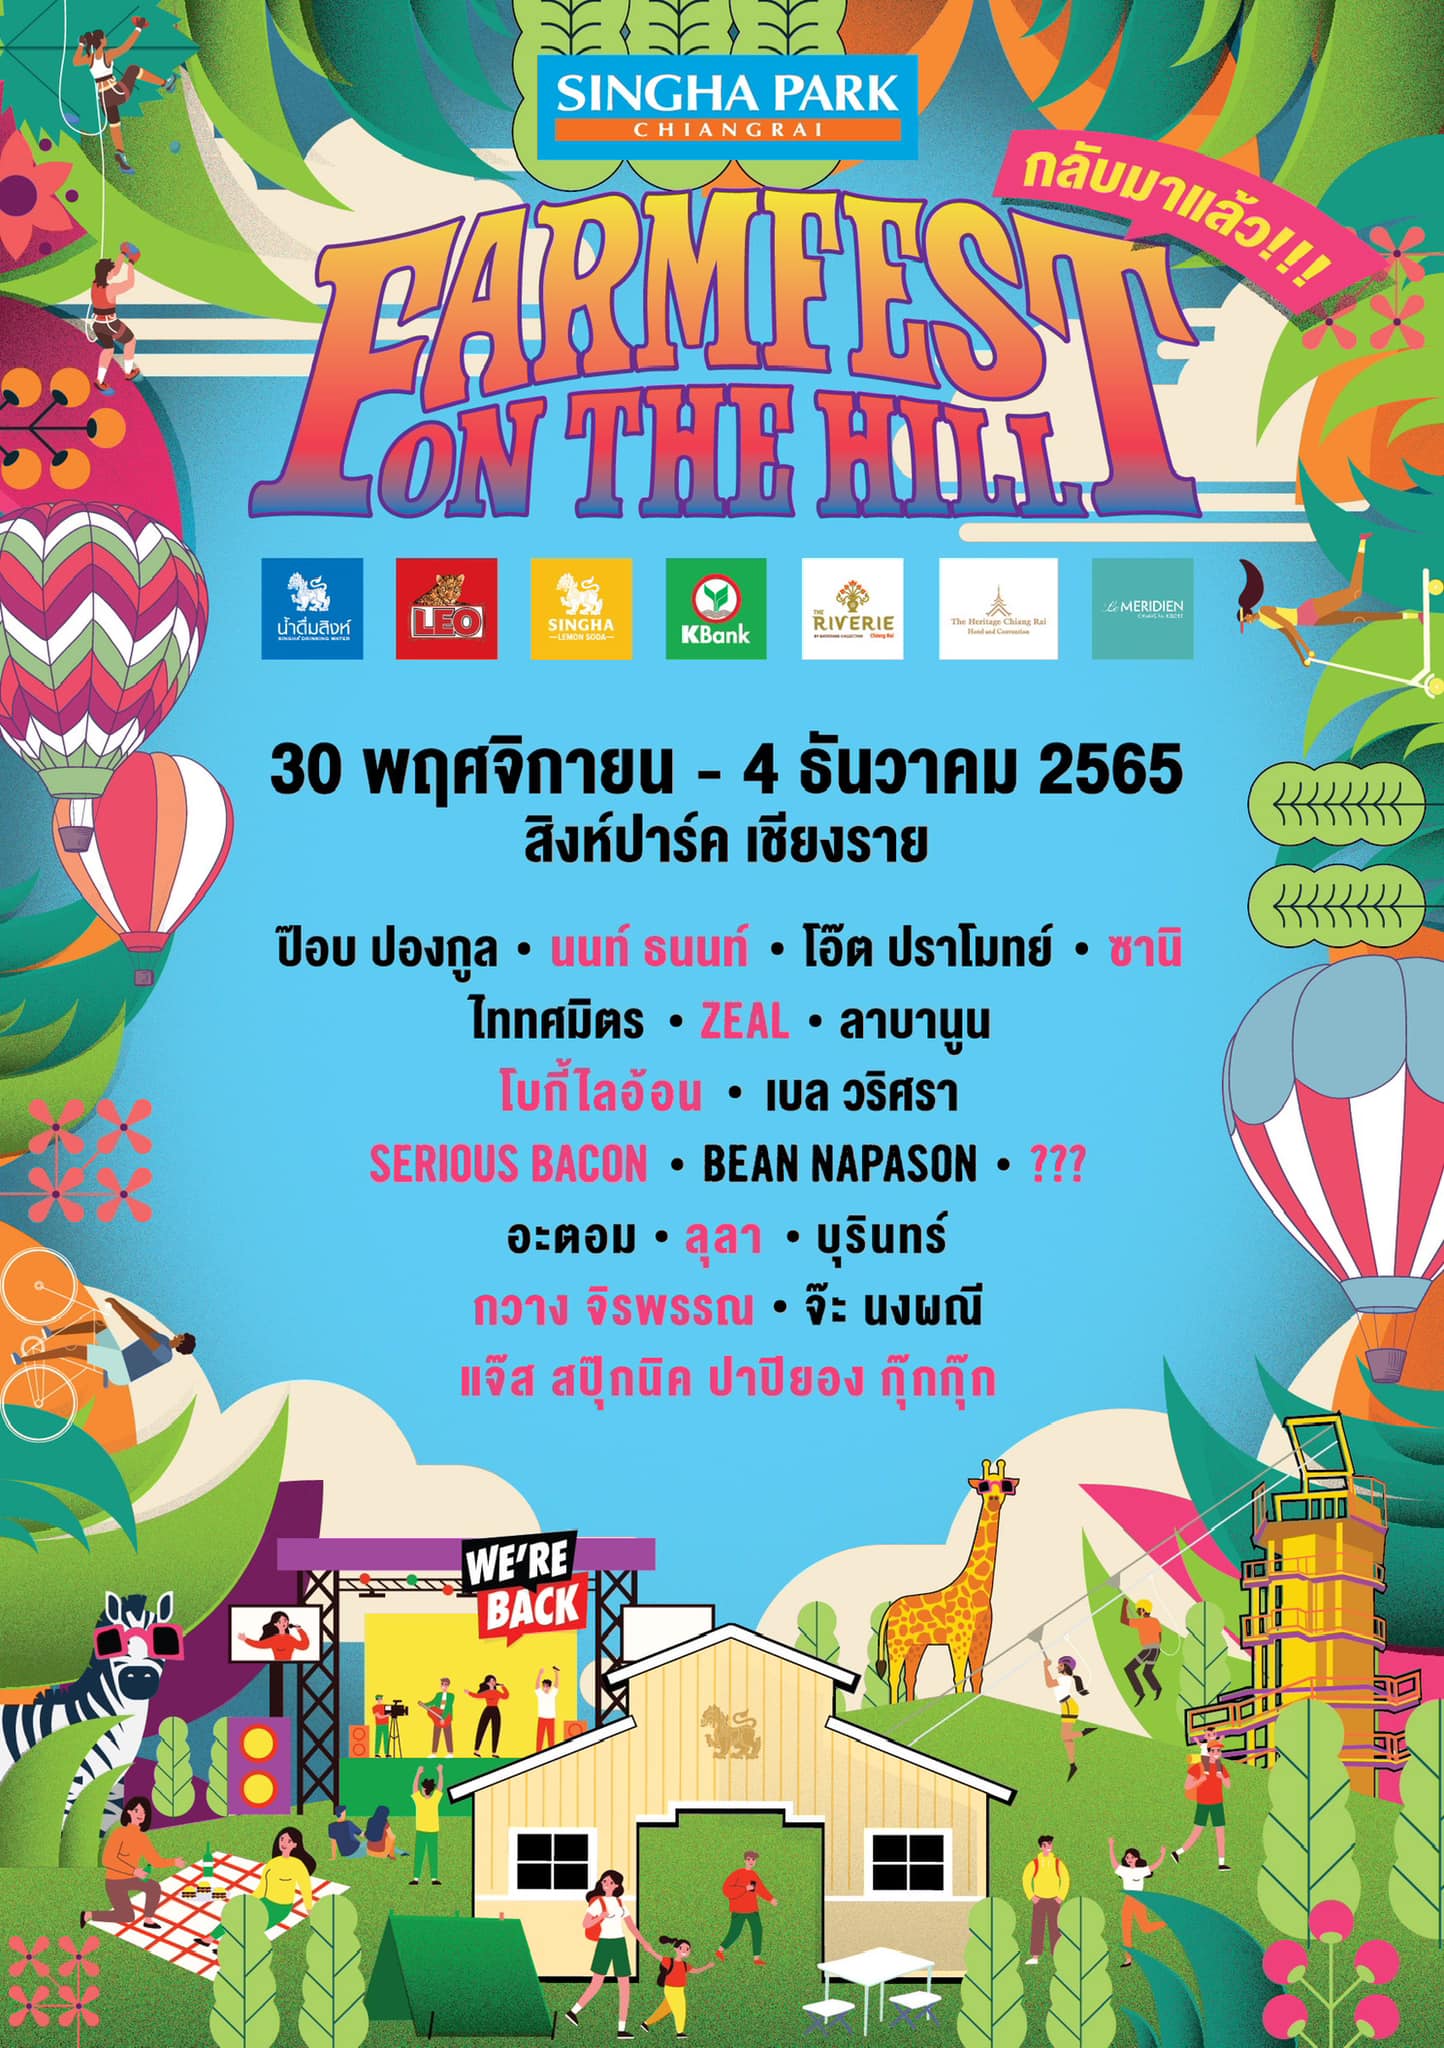 Singha Park Chiangrai Farm Festival on The Hill 2022